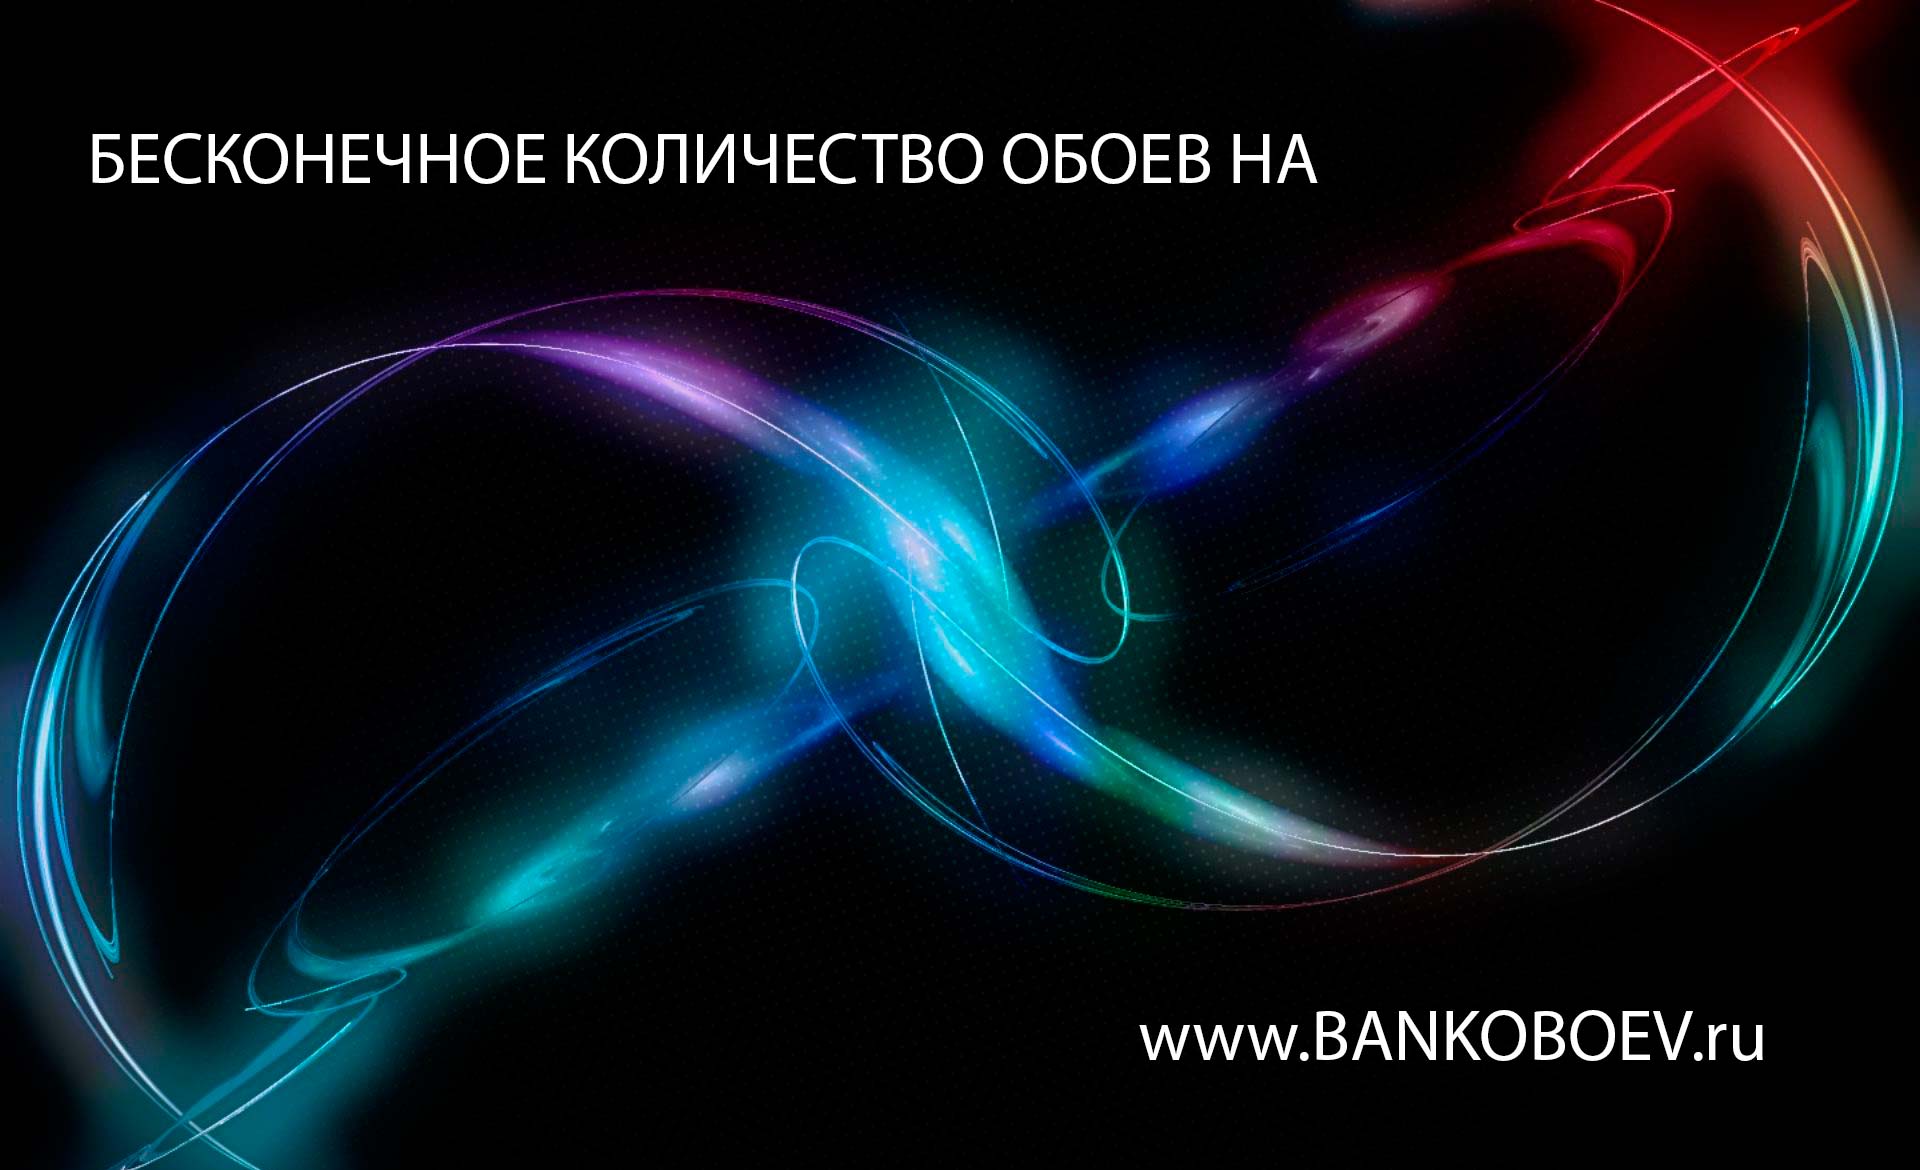 Bankoboev Ru Image Mtm0odky Jpg